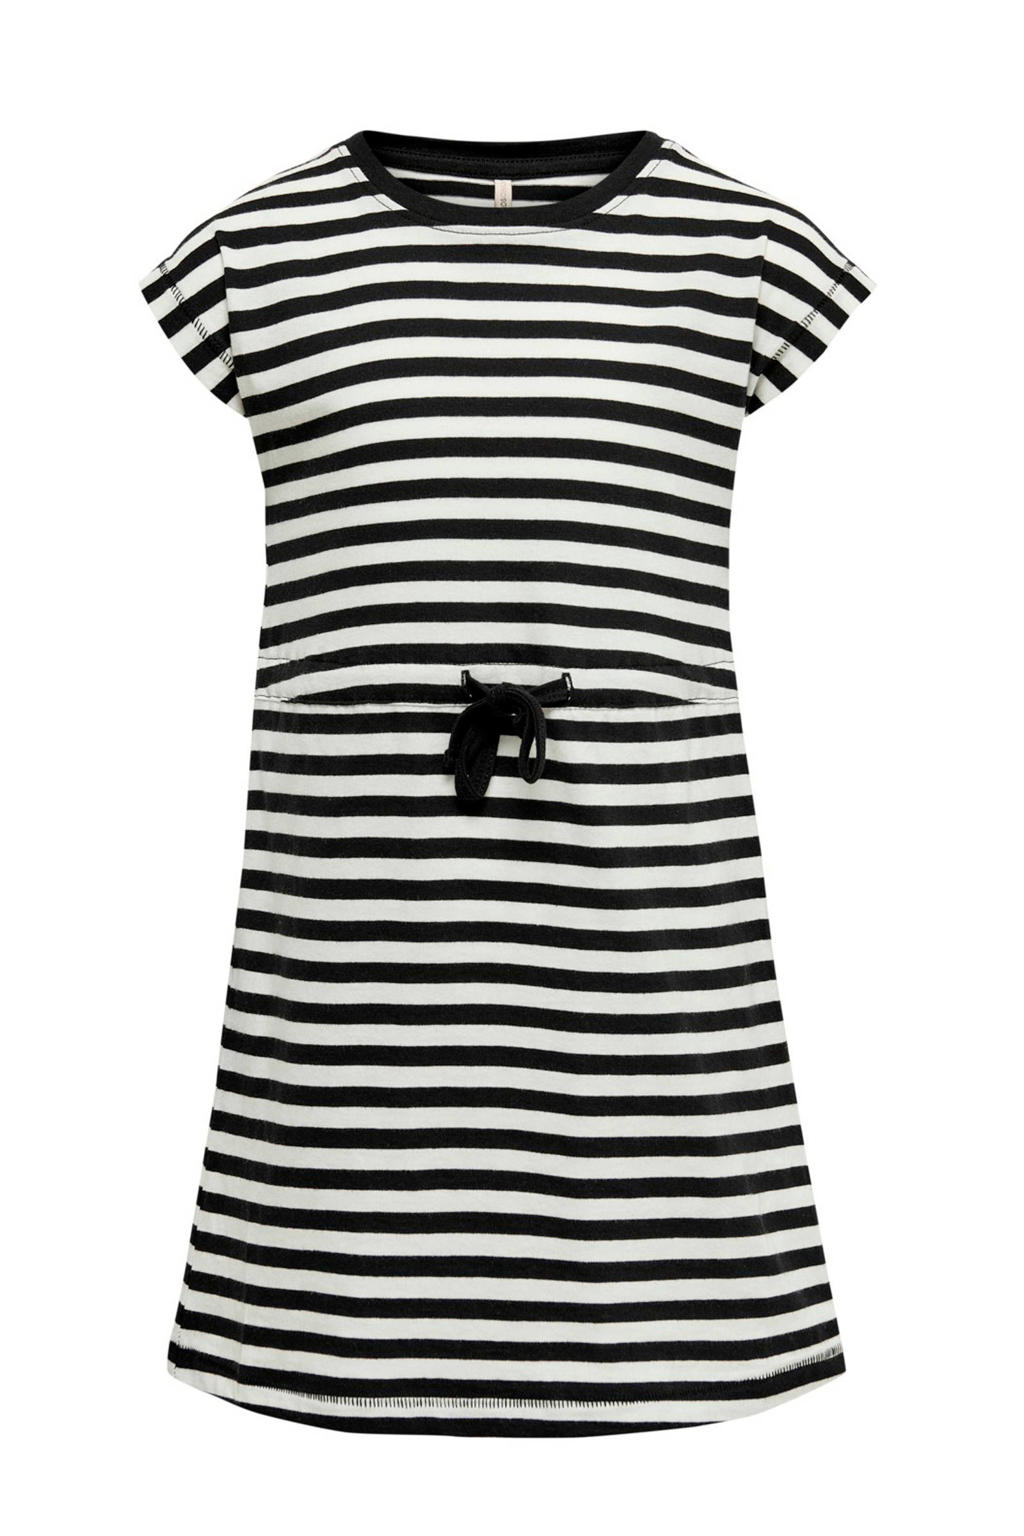 KIDS ONLY gestreepte A-lijn jurk KONMAY van biologisch katoen wit/zwart